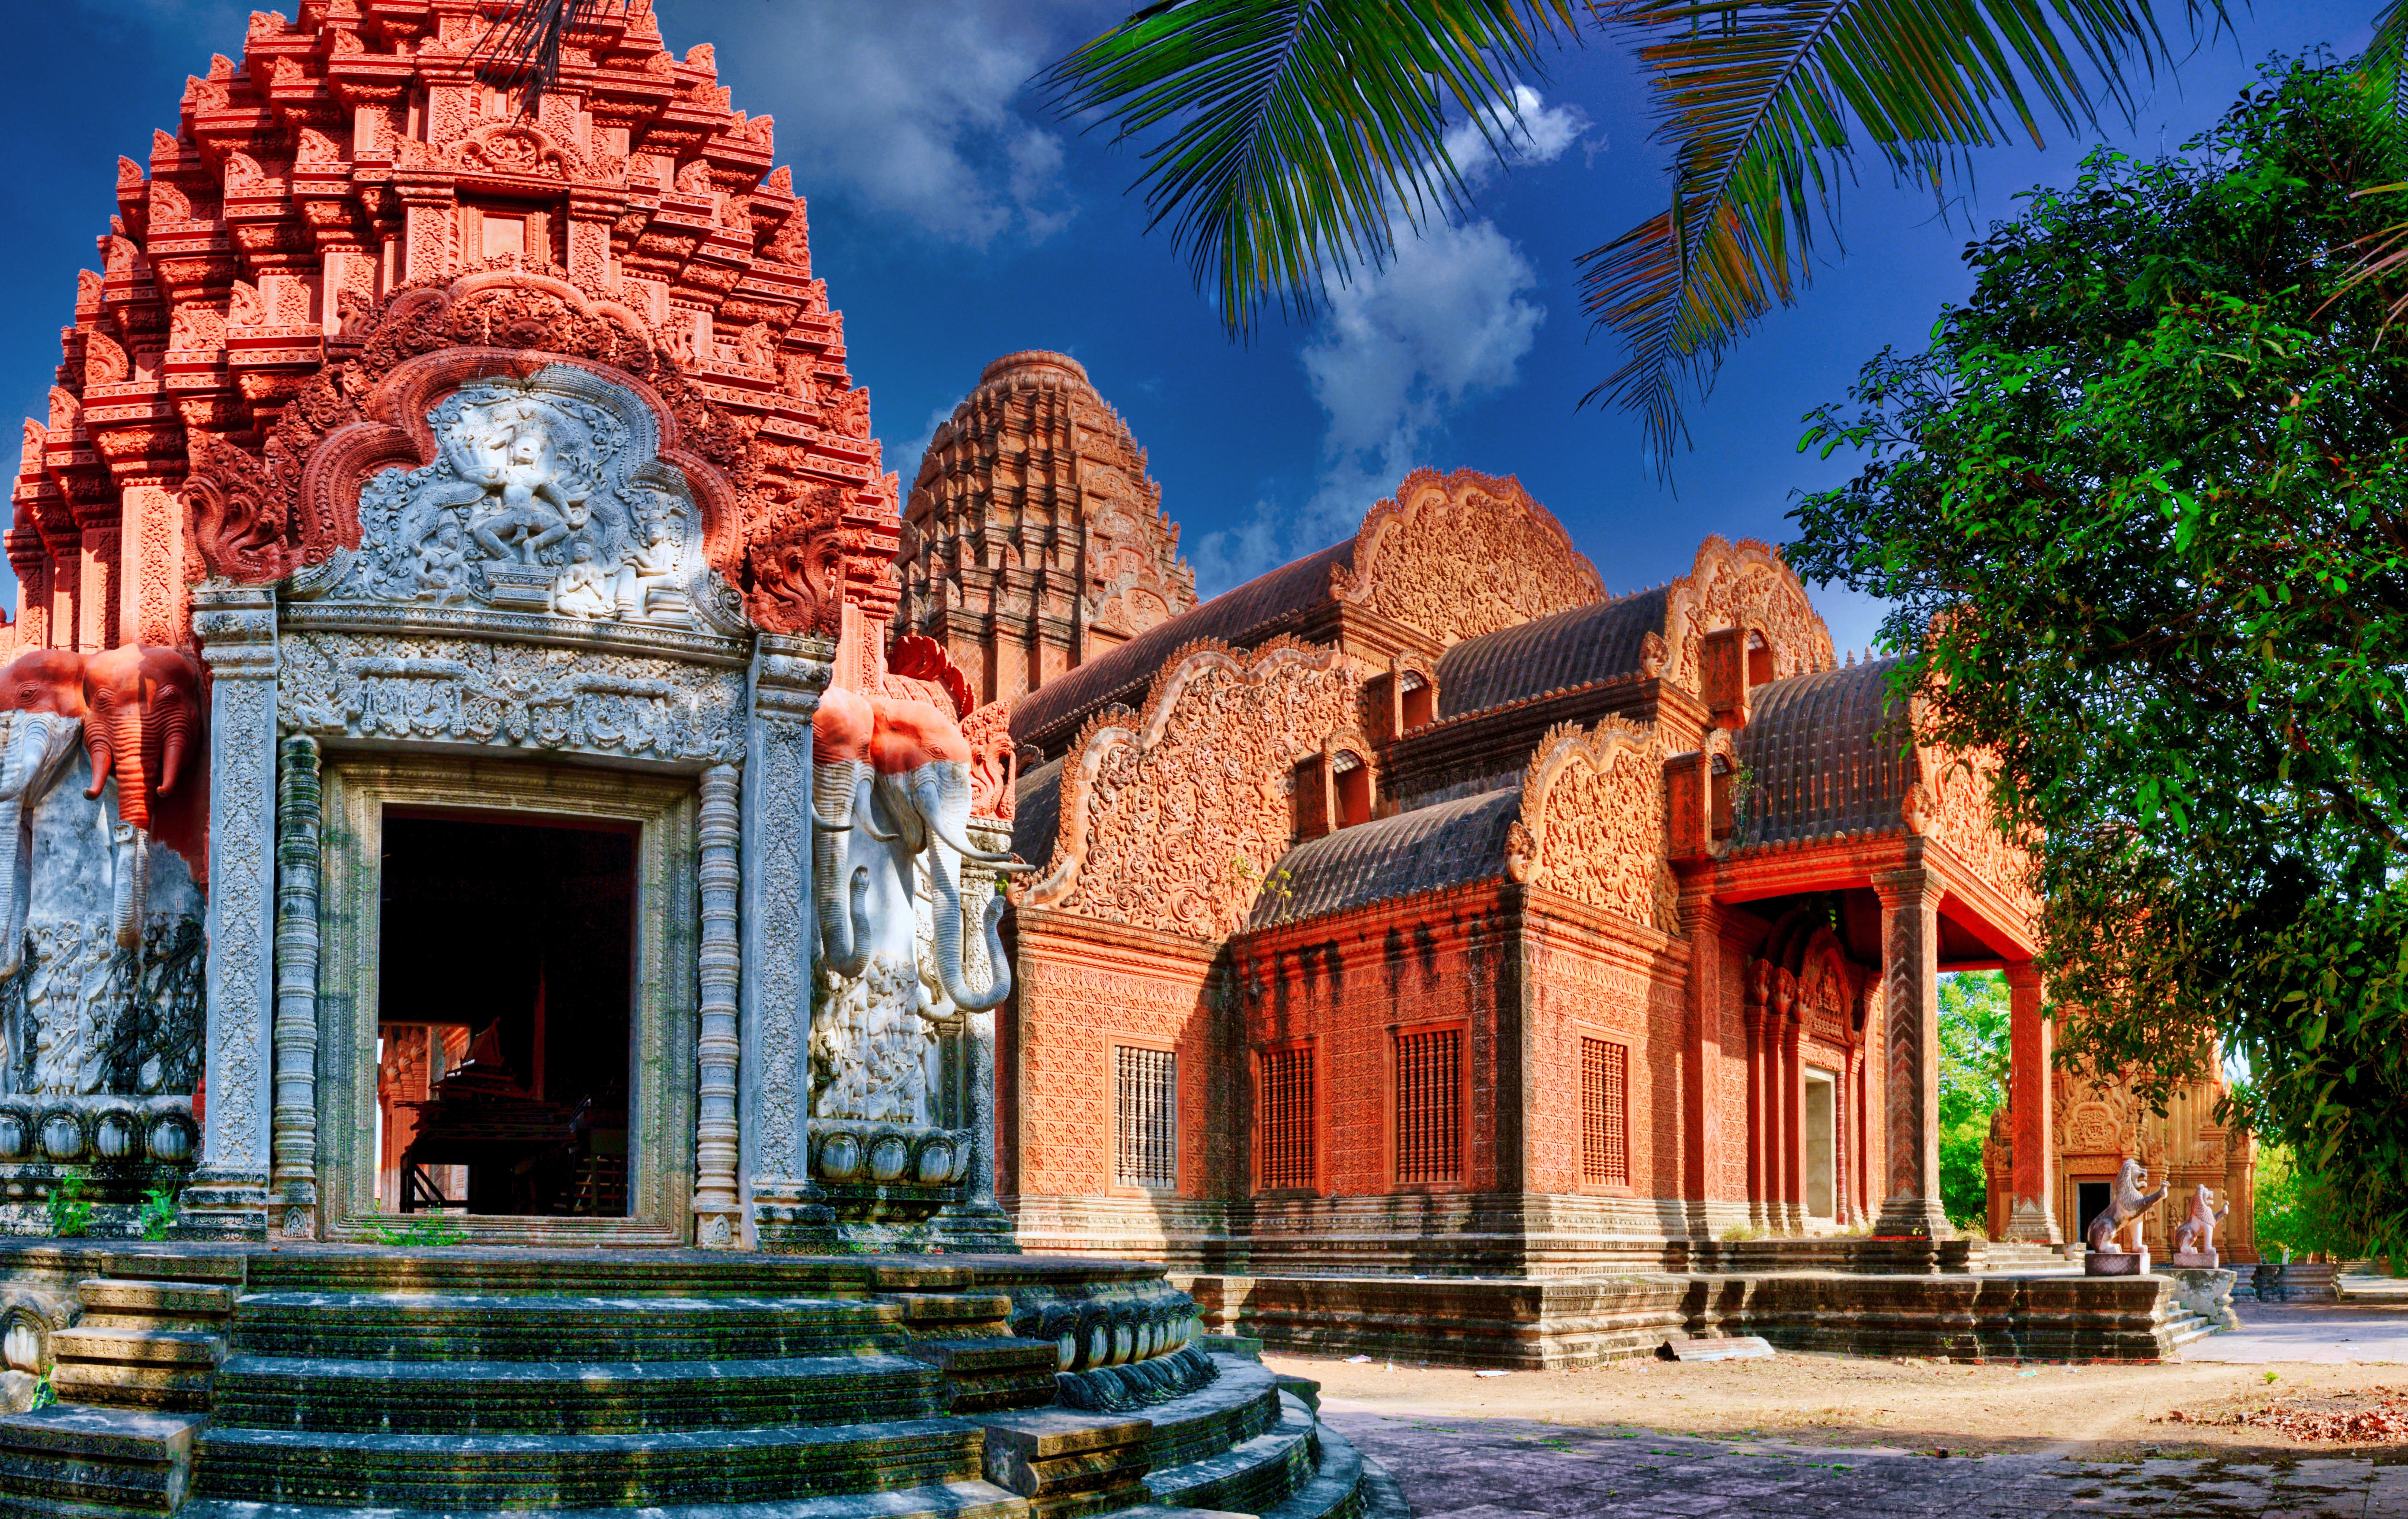 Vista do Mosteiro Phnom Reap, Camboja - Representa seguro viagem para Camboja.